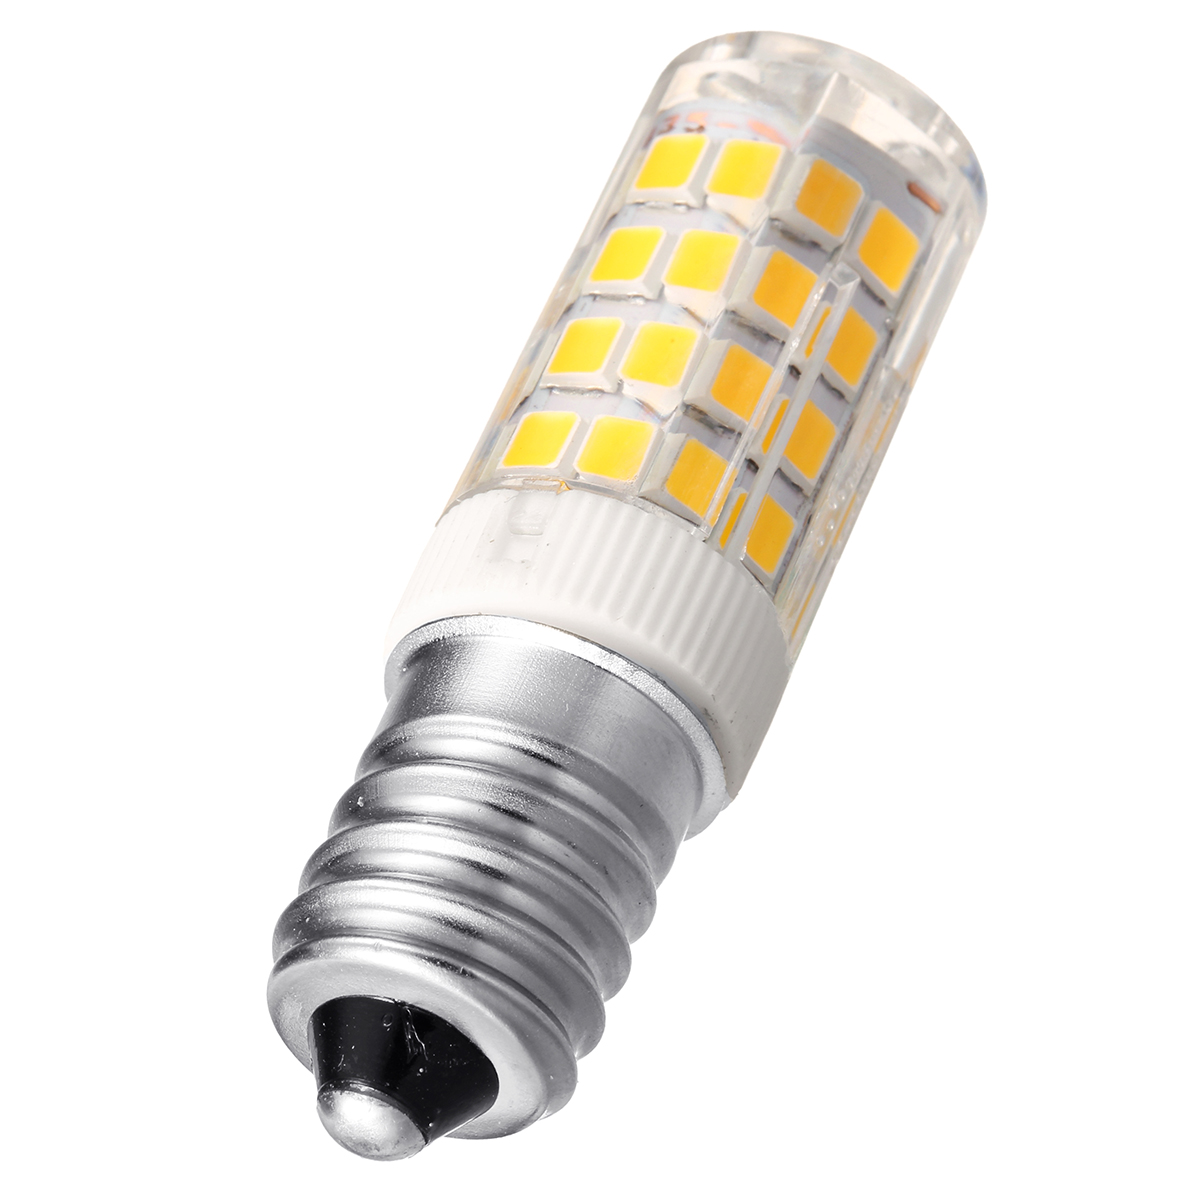 ARILUXreg-E14-G9-5W-SMD2835-Pure-White-Warm-White-LED-Corn-Light-Bulb-No-Flicker-AC220V-1225338